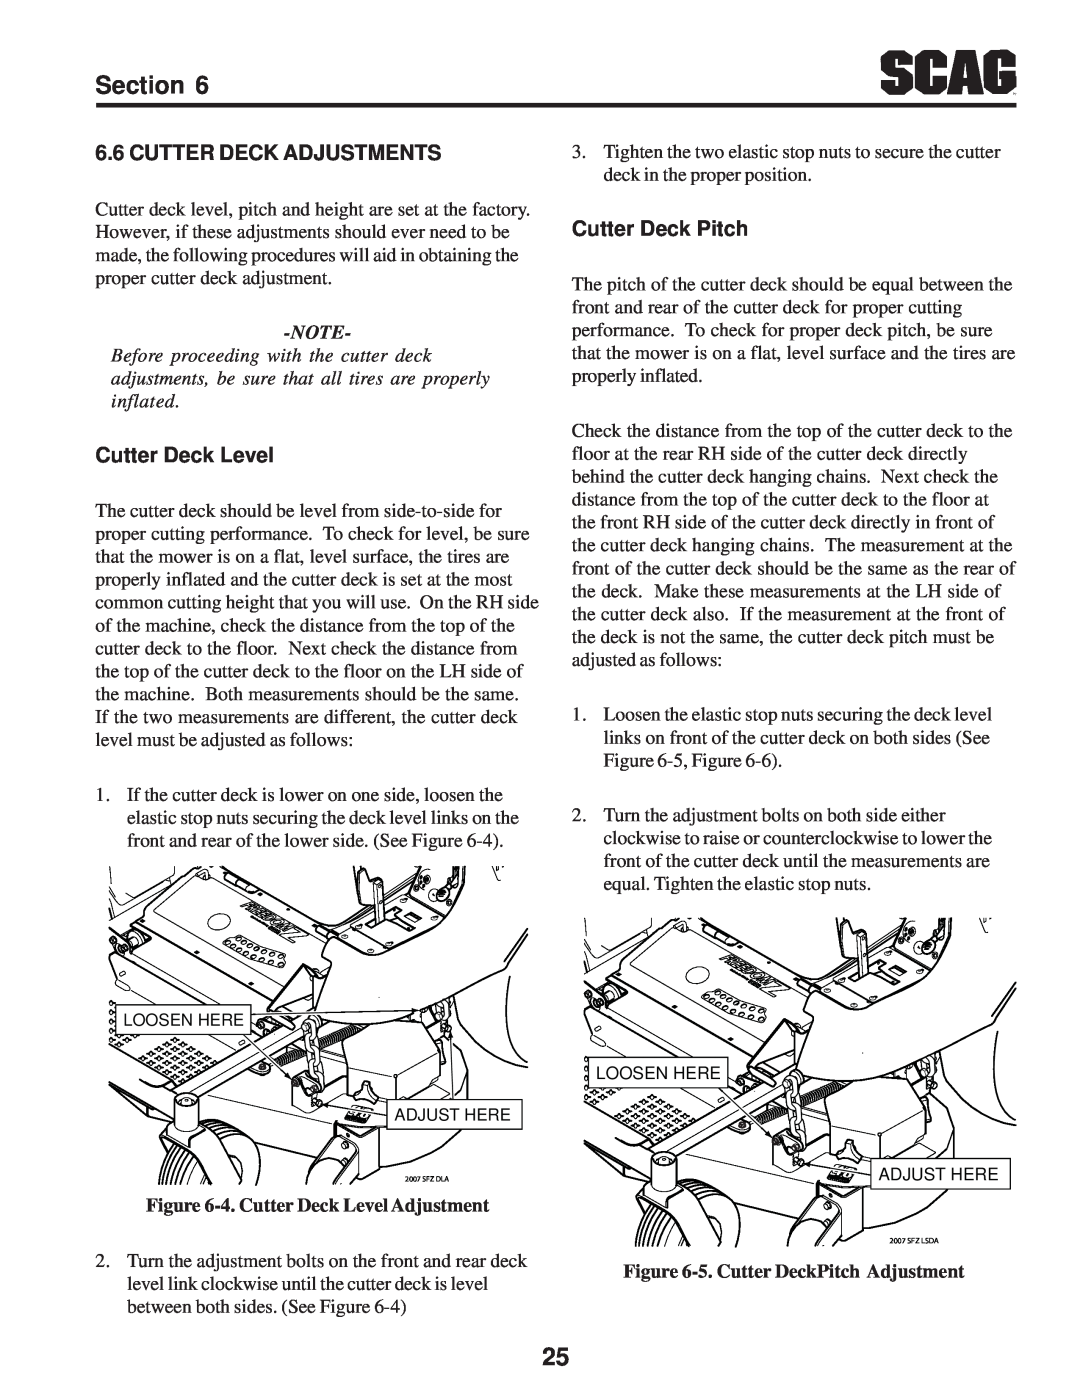 Scag Power Equipment SFZ manual Cutter Deck Adjustments, Cutter Deck Pitch, 4. Cutter Deck Level Adjustment 